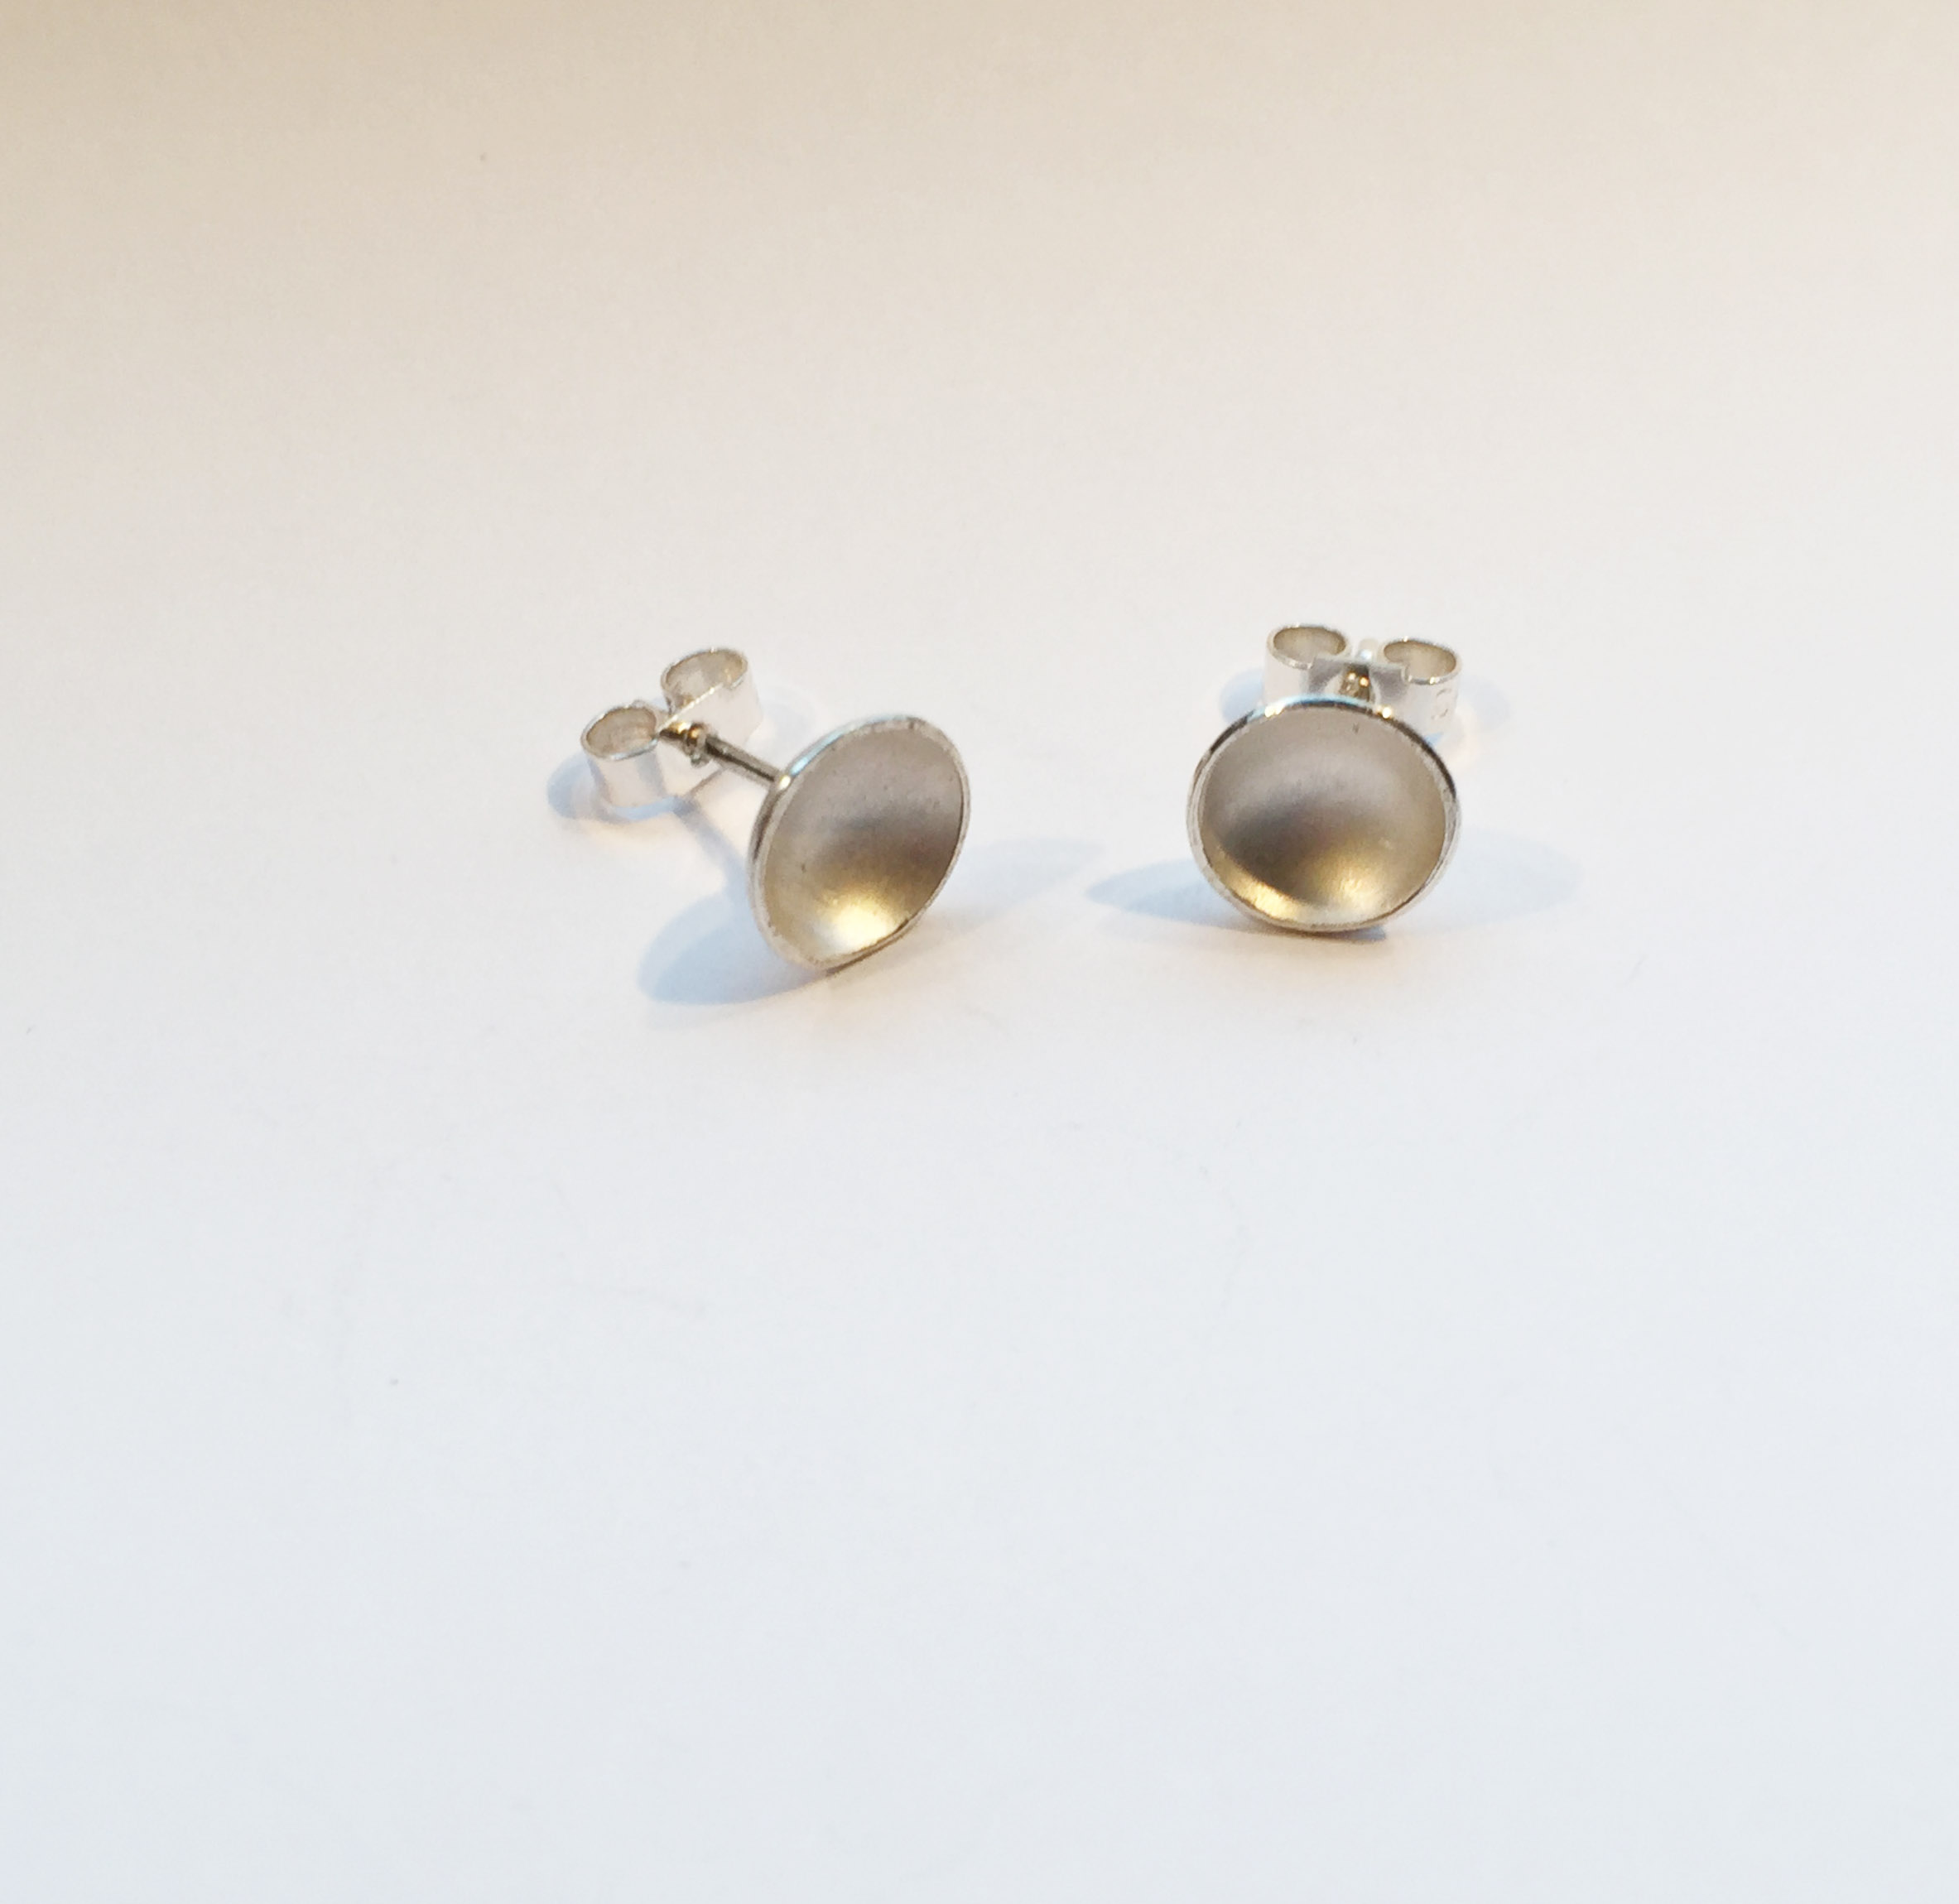 Silver earrings studs by Karen Parker